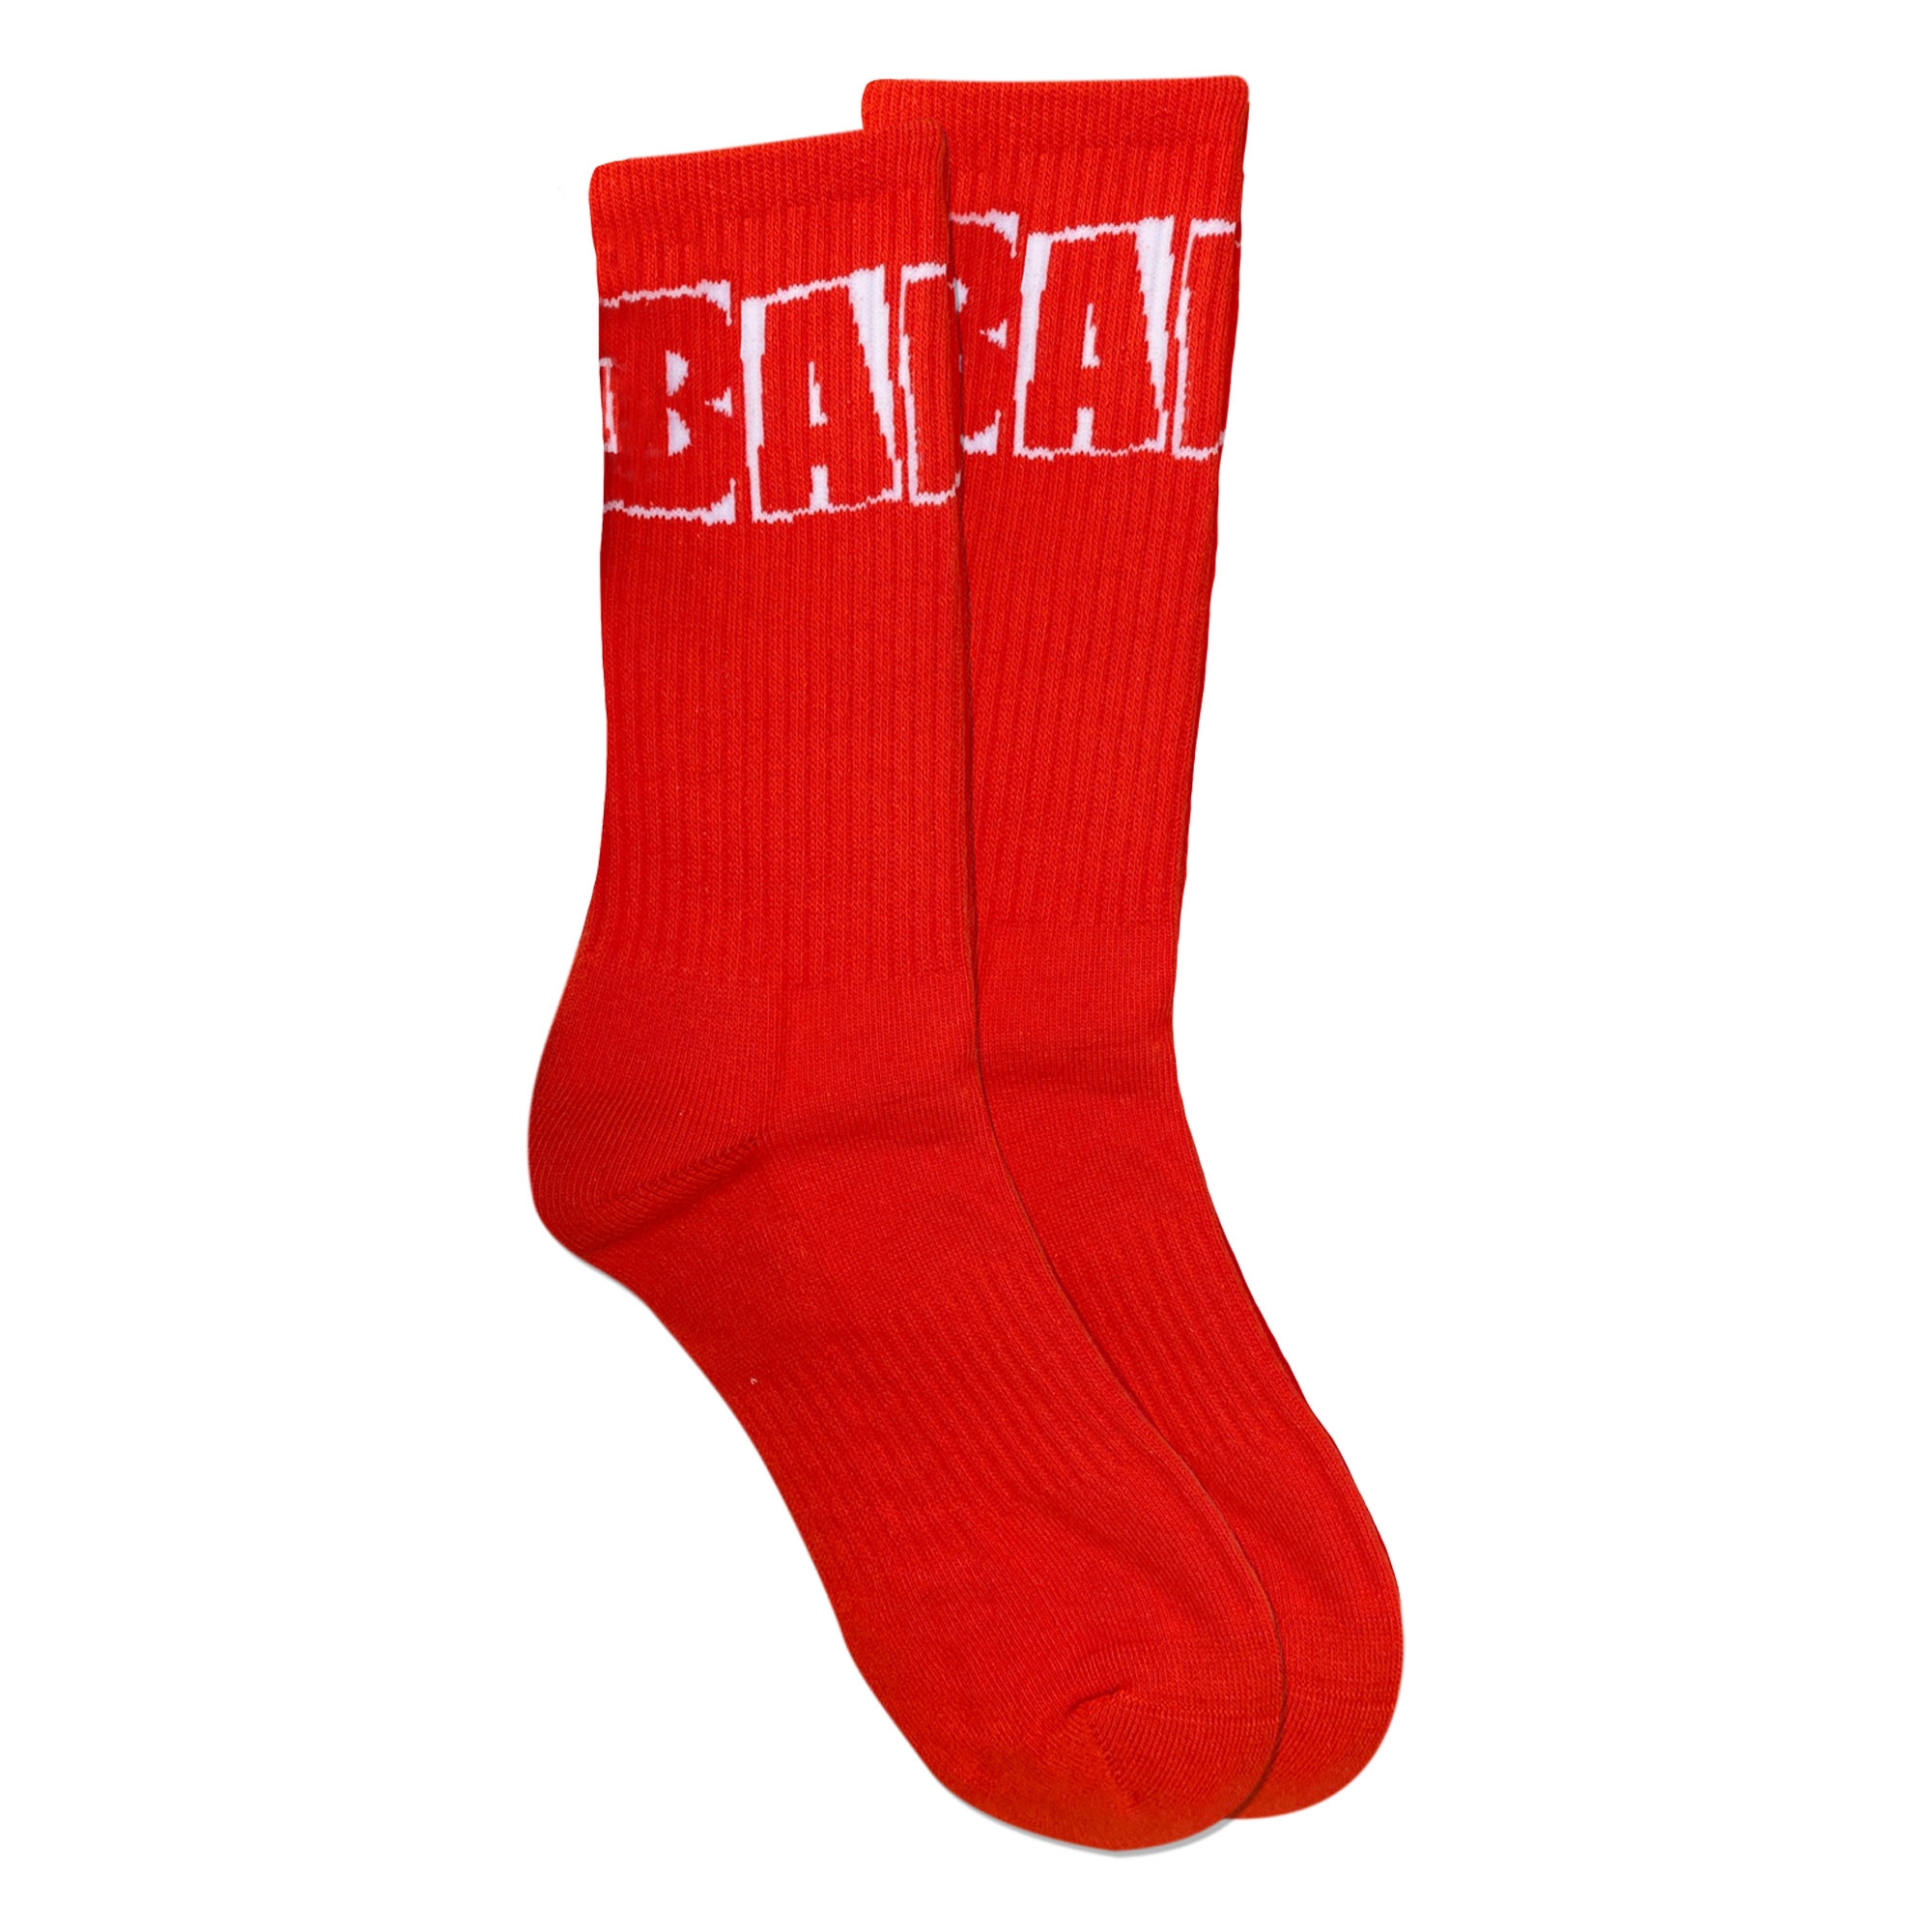 BAKER Socks BRAND LOGO, red